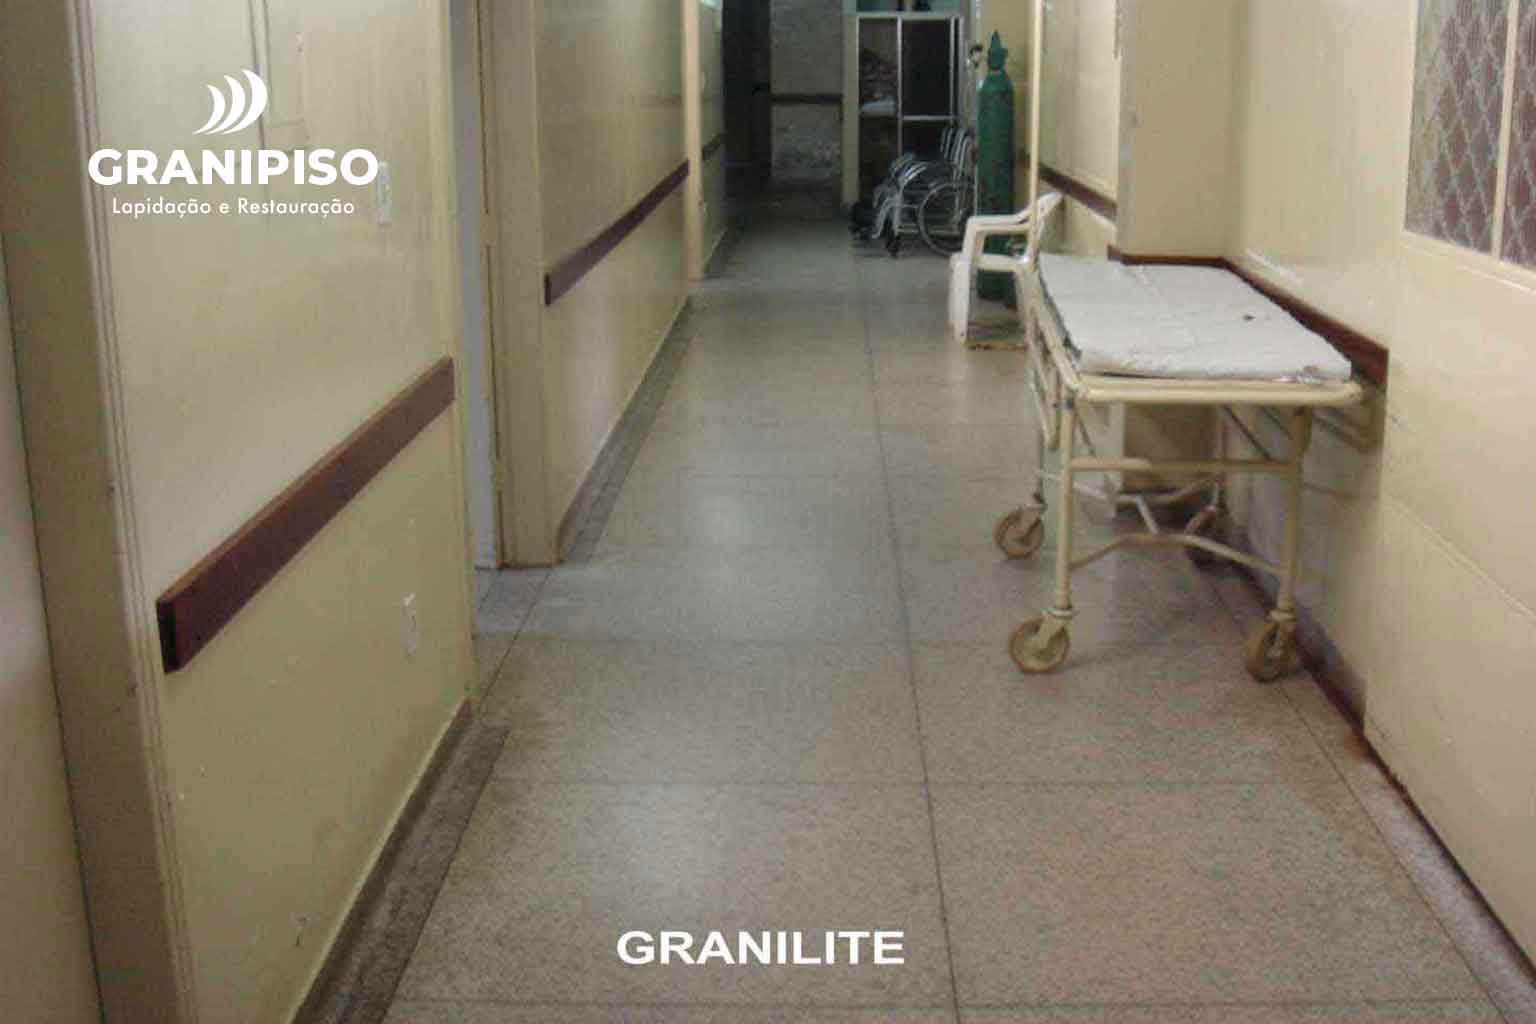 piso-granilite-pronto-de-socorro-hospital-granipiso-03